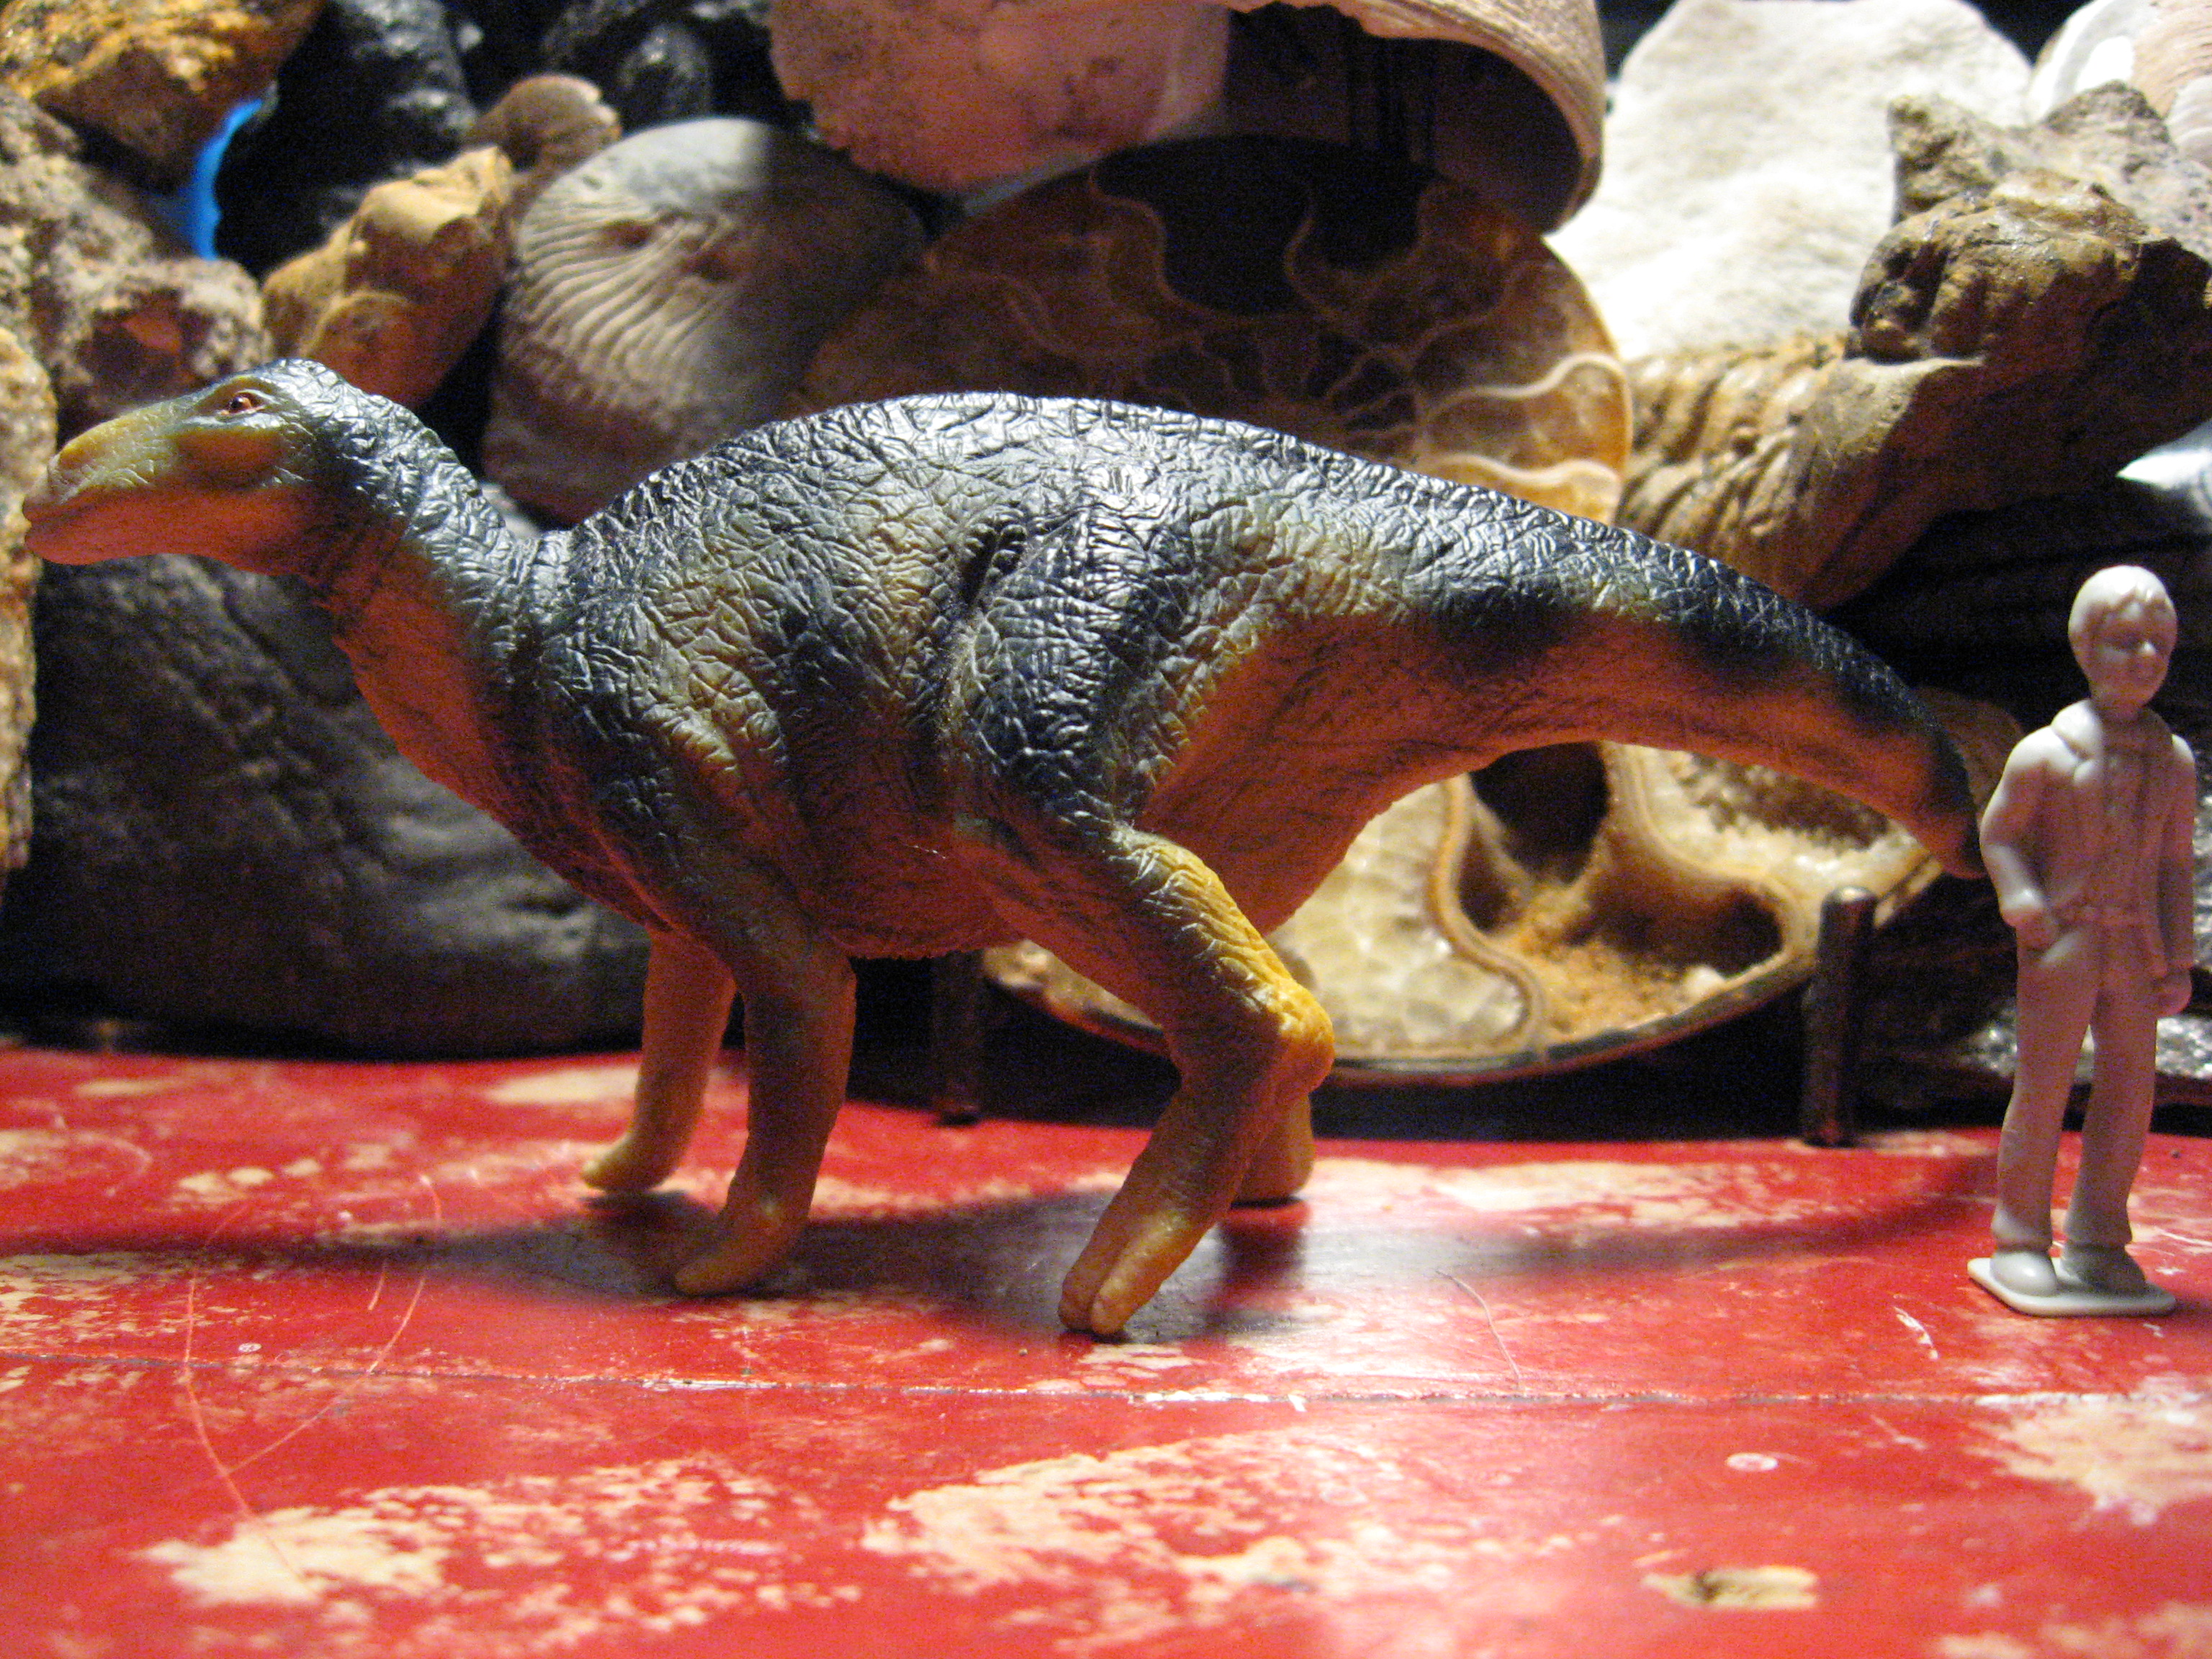 Iguanodon (Replica-Saurus by Schleich)